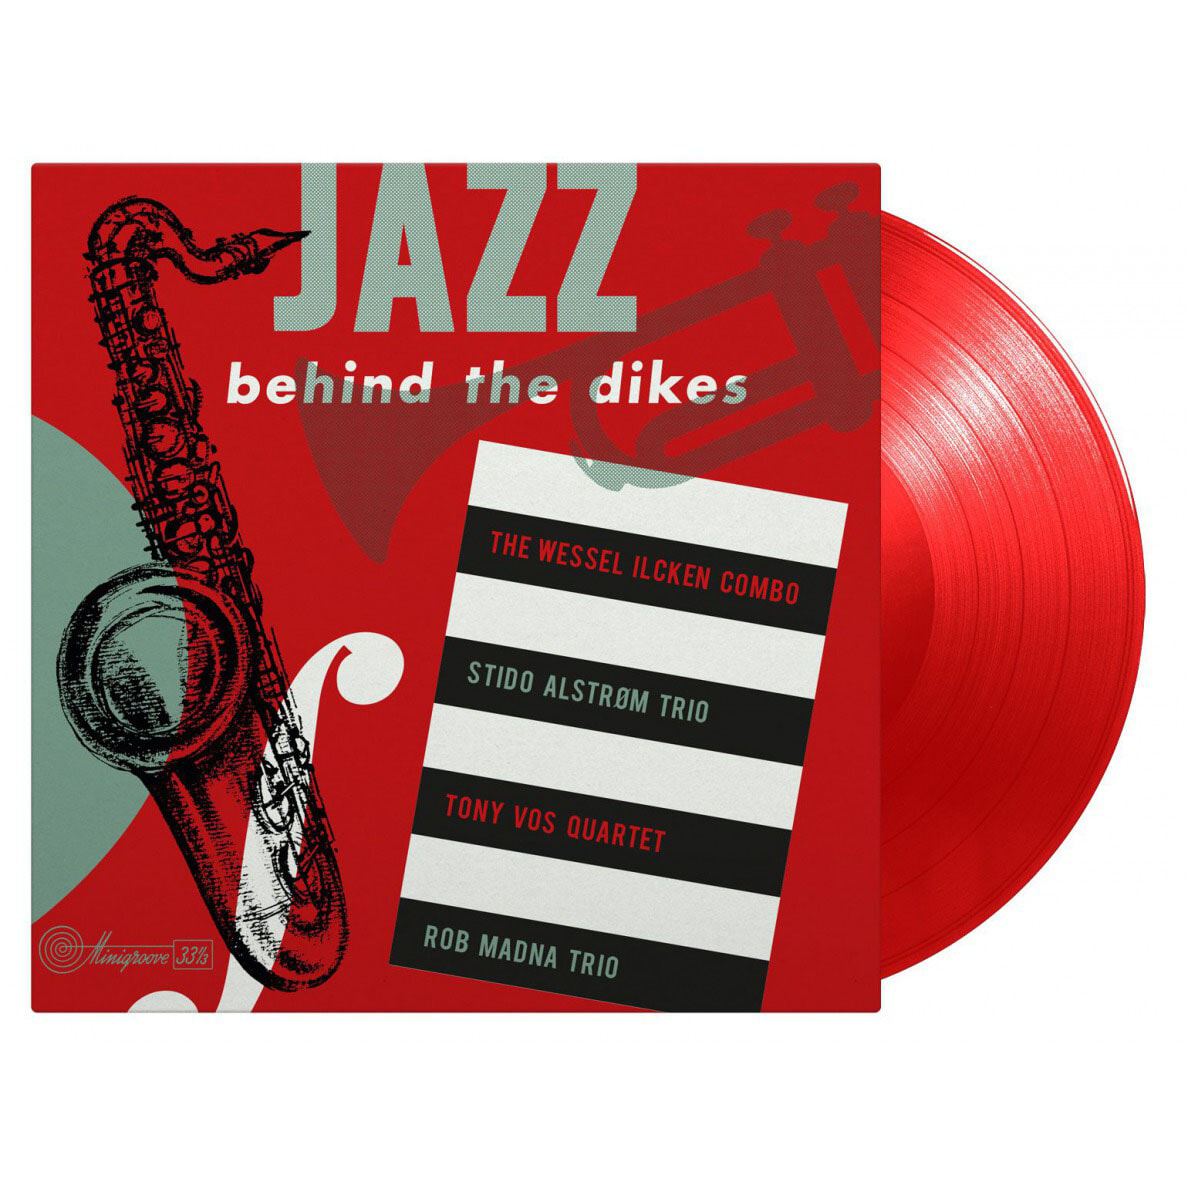 네덜란드 재즈 뮤지션들이 연주한 컴필레이션 앨범 1집 (Jazz Behind the Dikes Vol.1) [레드 컬러 LP] 